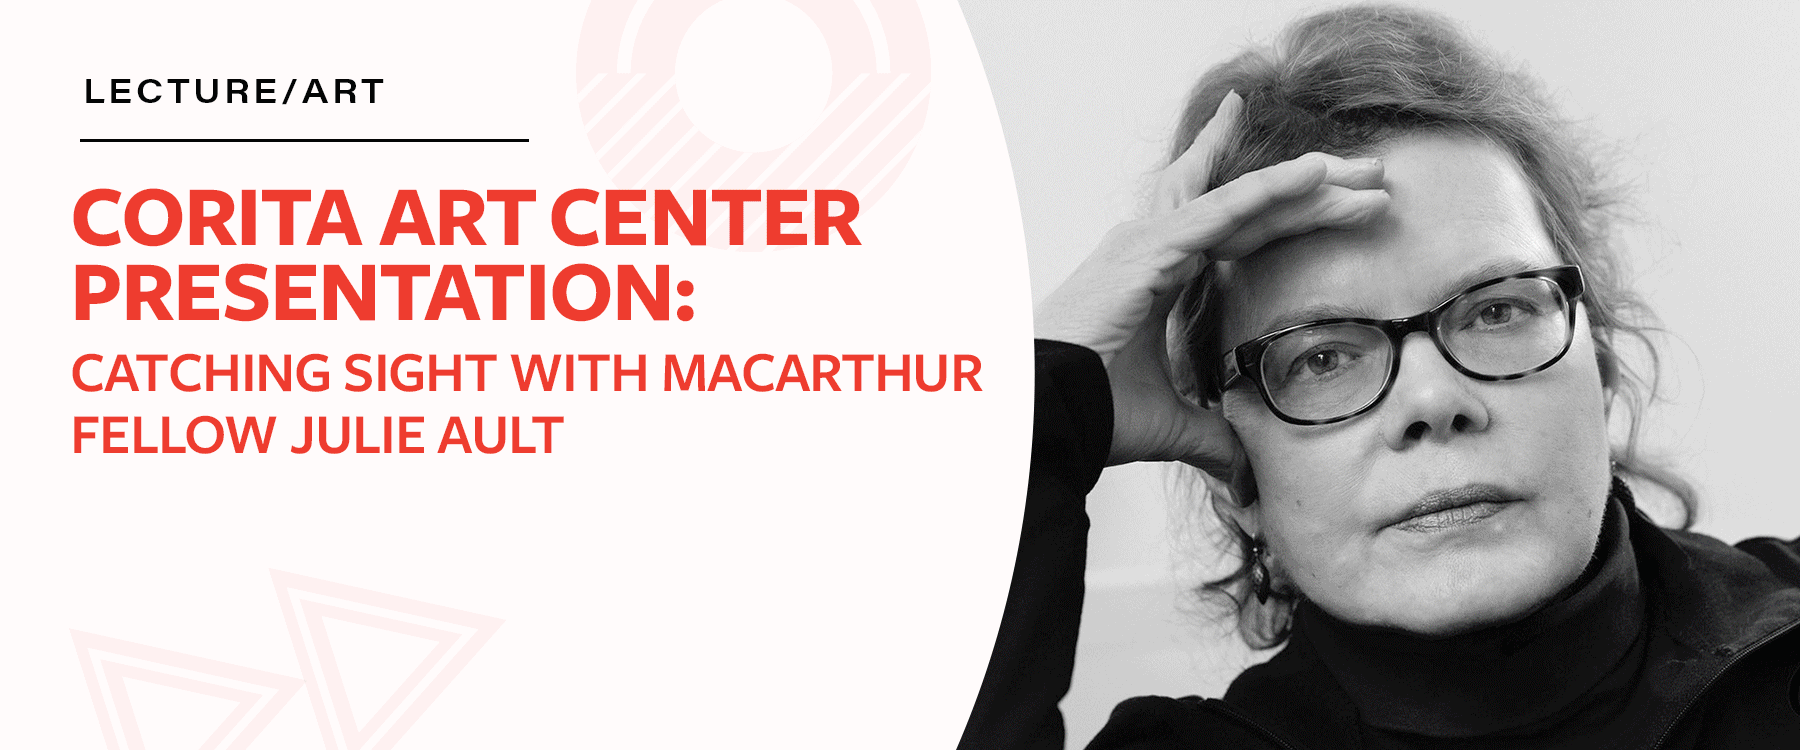 Corita Art Center Presentation: Catching Sight with MacArthur Fellow Julie Ault